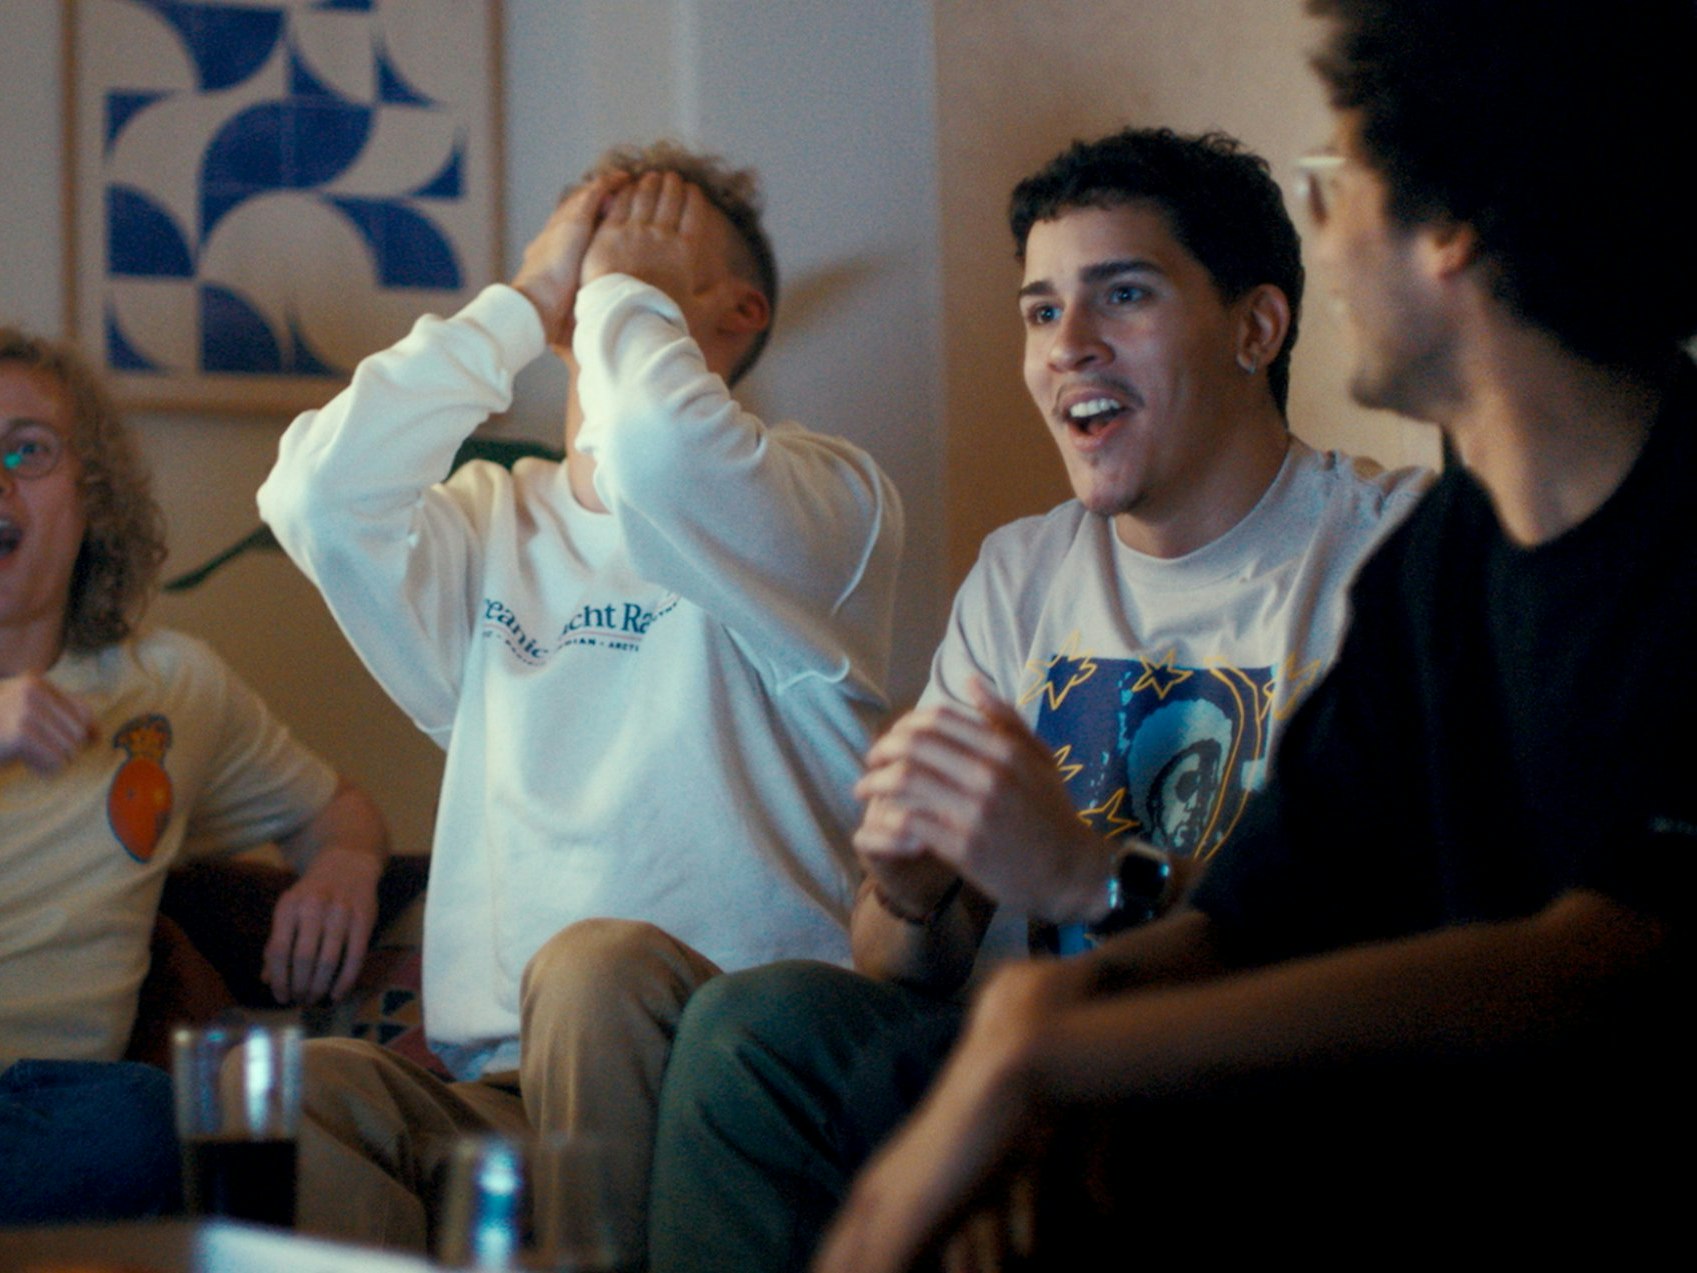 Illustrasjonsfoto av fire menn som reagerer på noe som skjer utenfor skjermen: to er overrasket, en skjuler ansiktet i hendene mens fjerdemann følger leende med